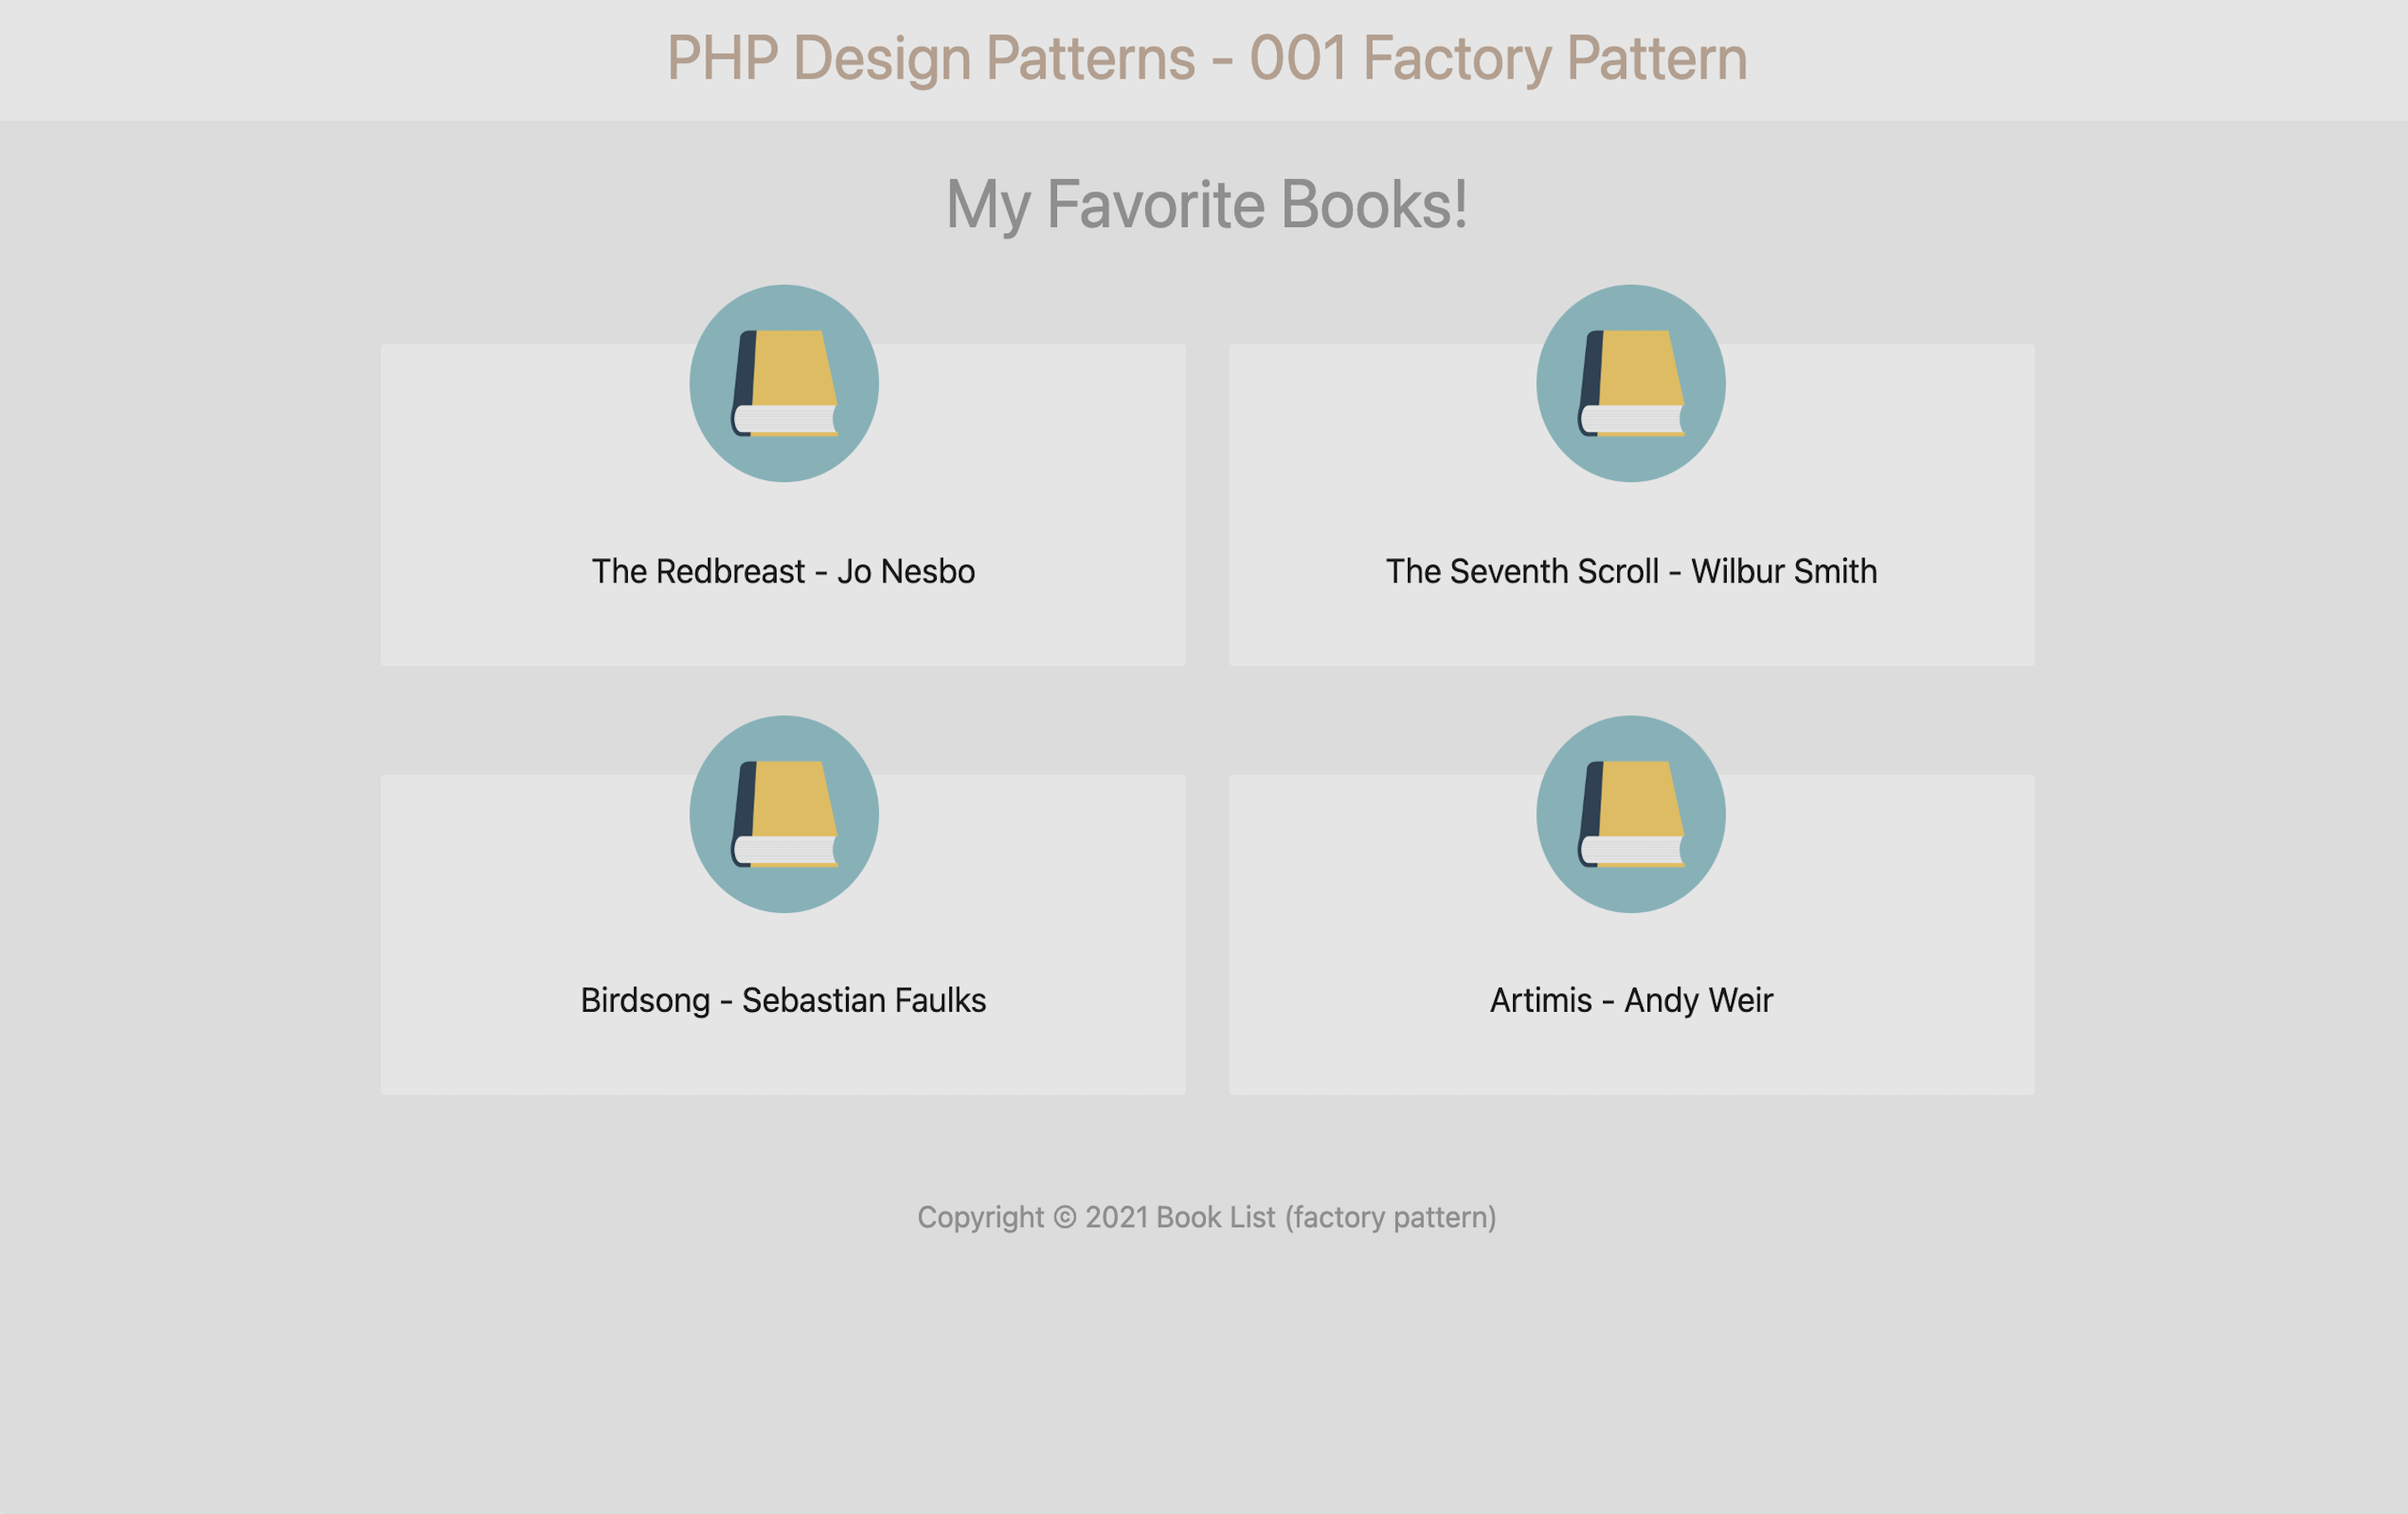 https://php-design-patterns-001-factor.herokuapp.com/